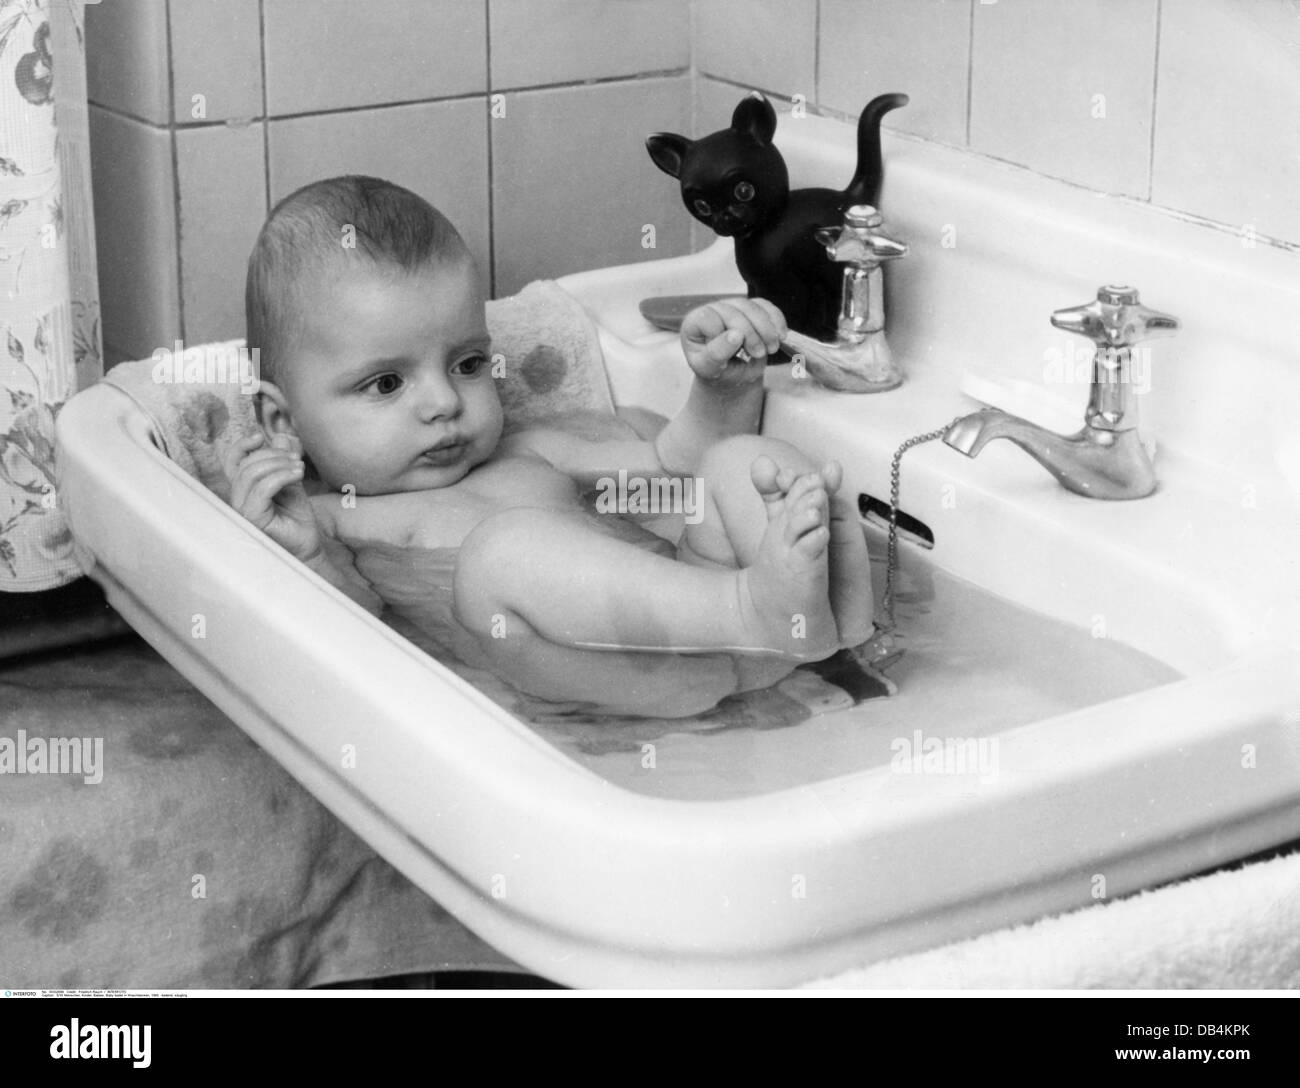 Personen, Kinder, Babys, Babybaden im Waschbecken, 1965,  Zusatzrechte-Clearences-nicht vorhanden Stockfotografie - Alamy